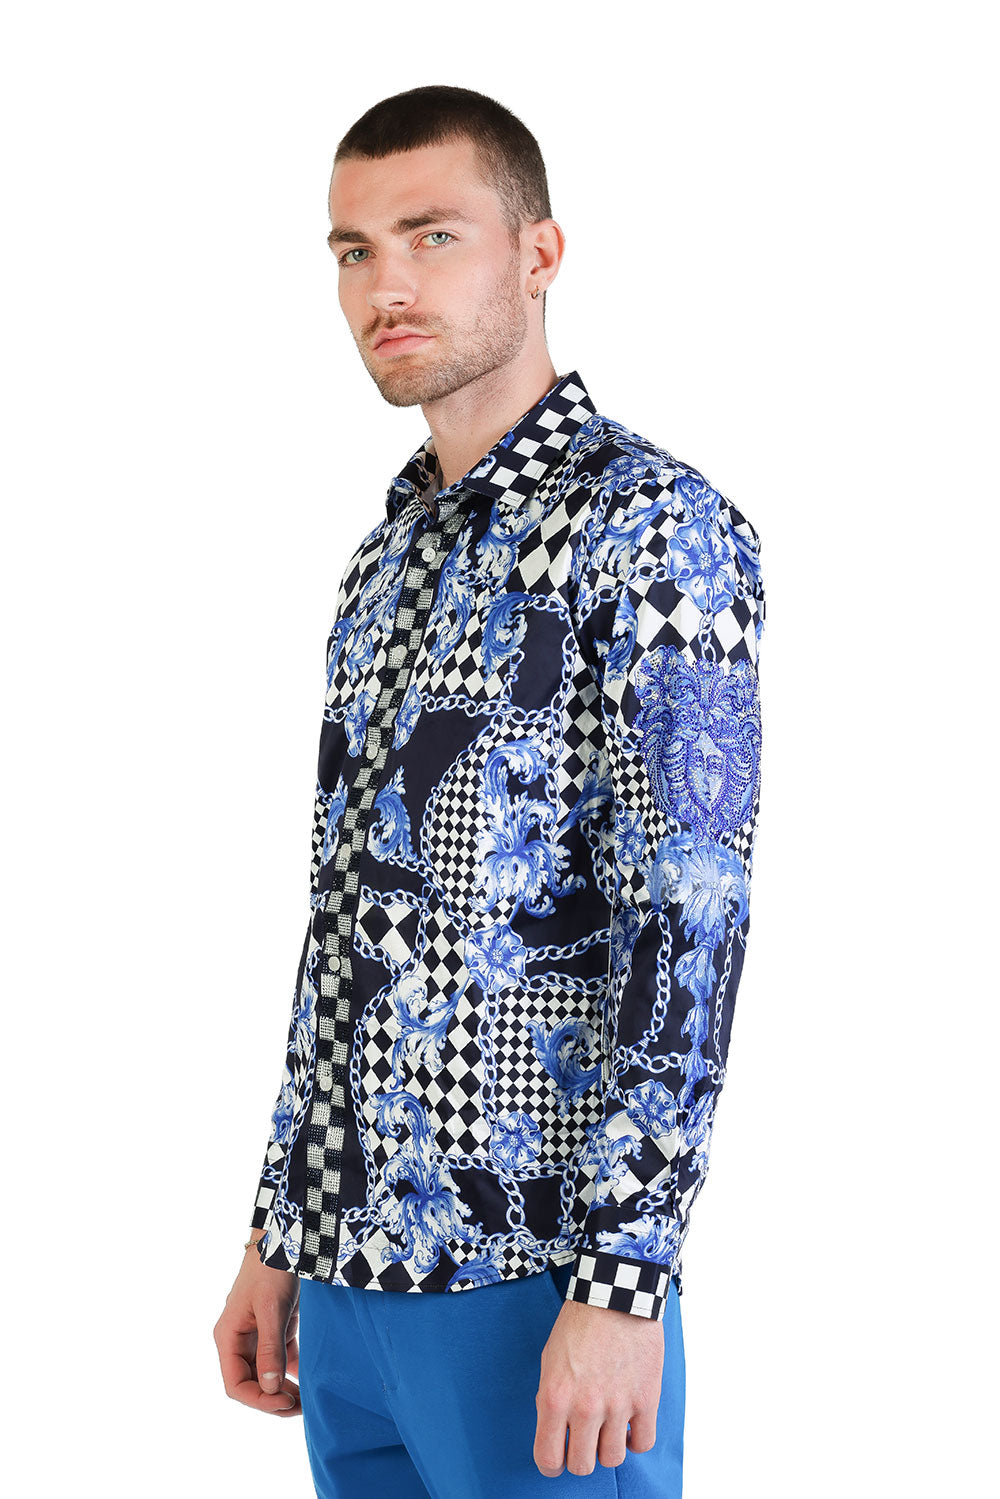 BARABAS Men's Medusa Floral Checkered Baroque Button Down Shirt SPR02 Navy